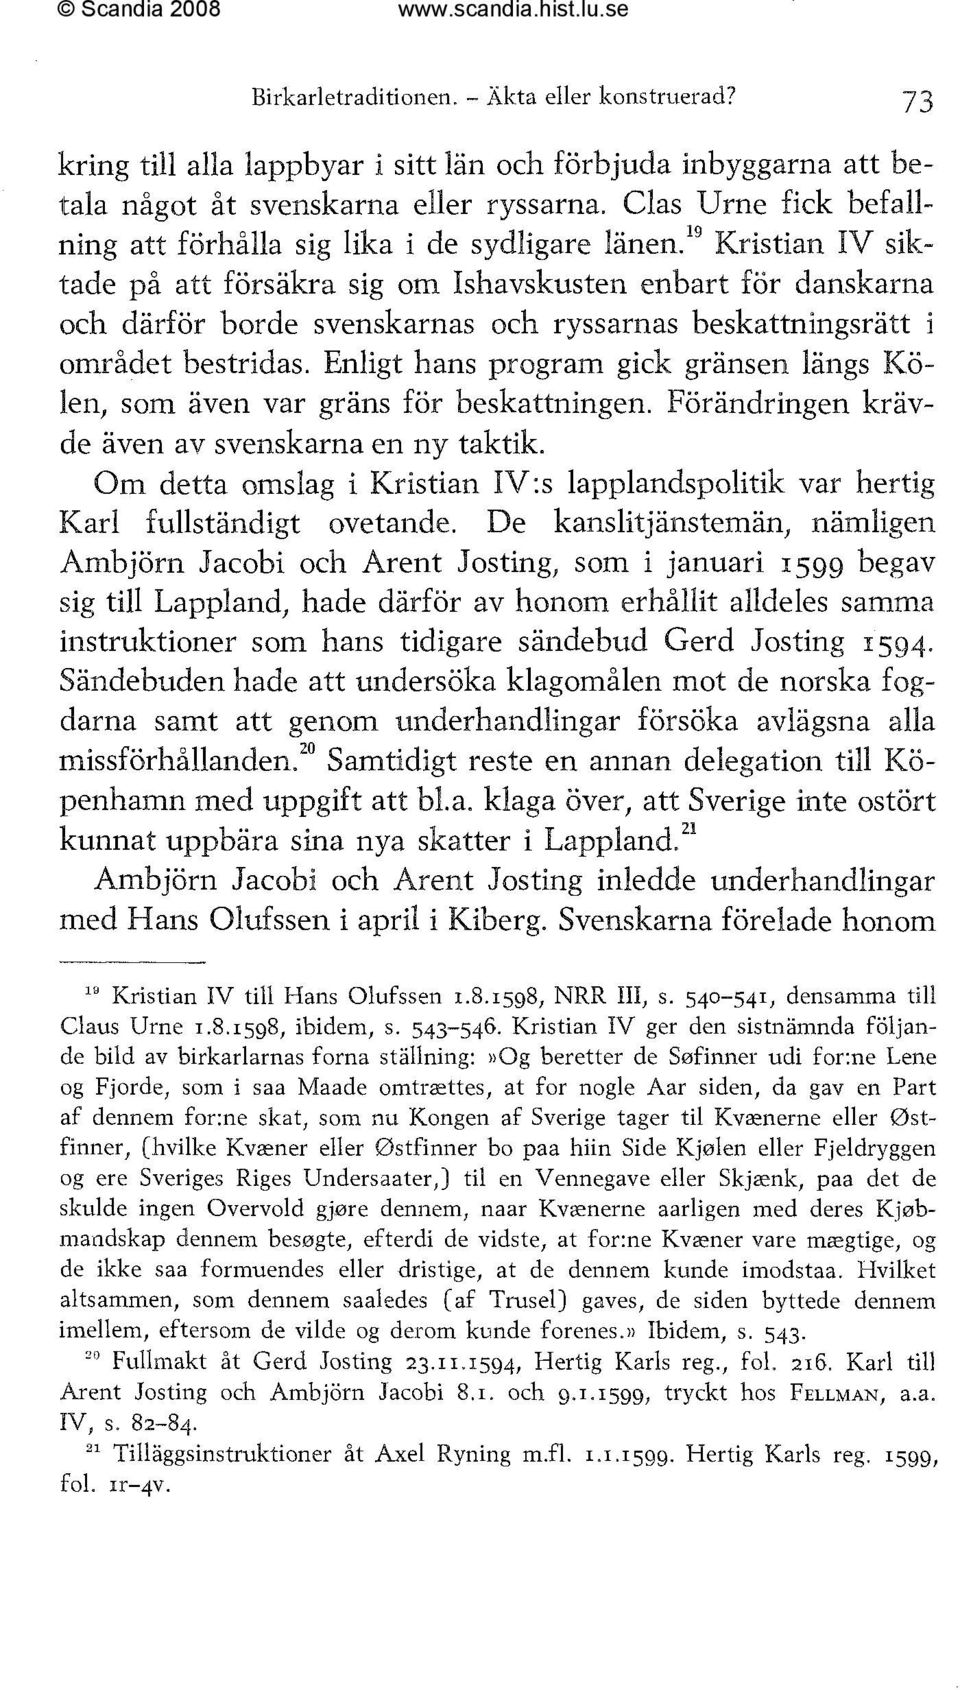 '%ristian IV siktade på att försäkra sig om Isbavskusten enbart for danskarna och därför borde svenskarnas och ryssarnas beskattningsrätt i området bestridas.